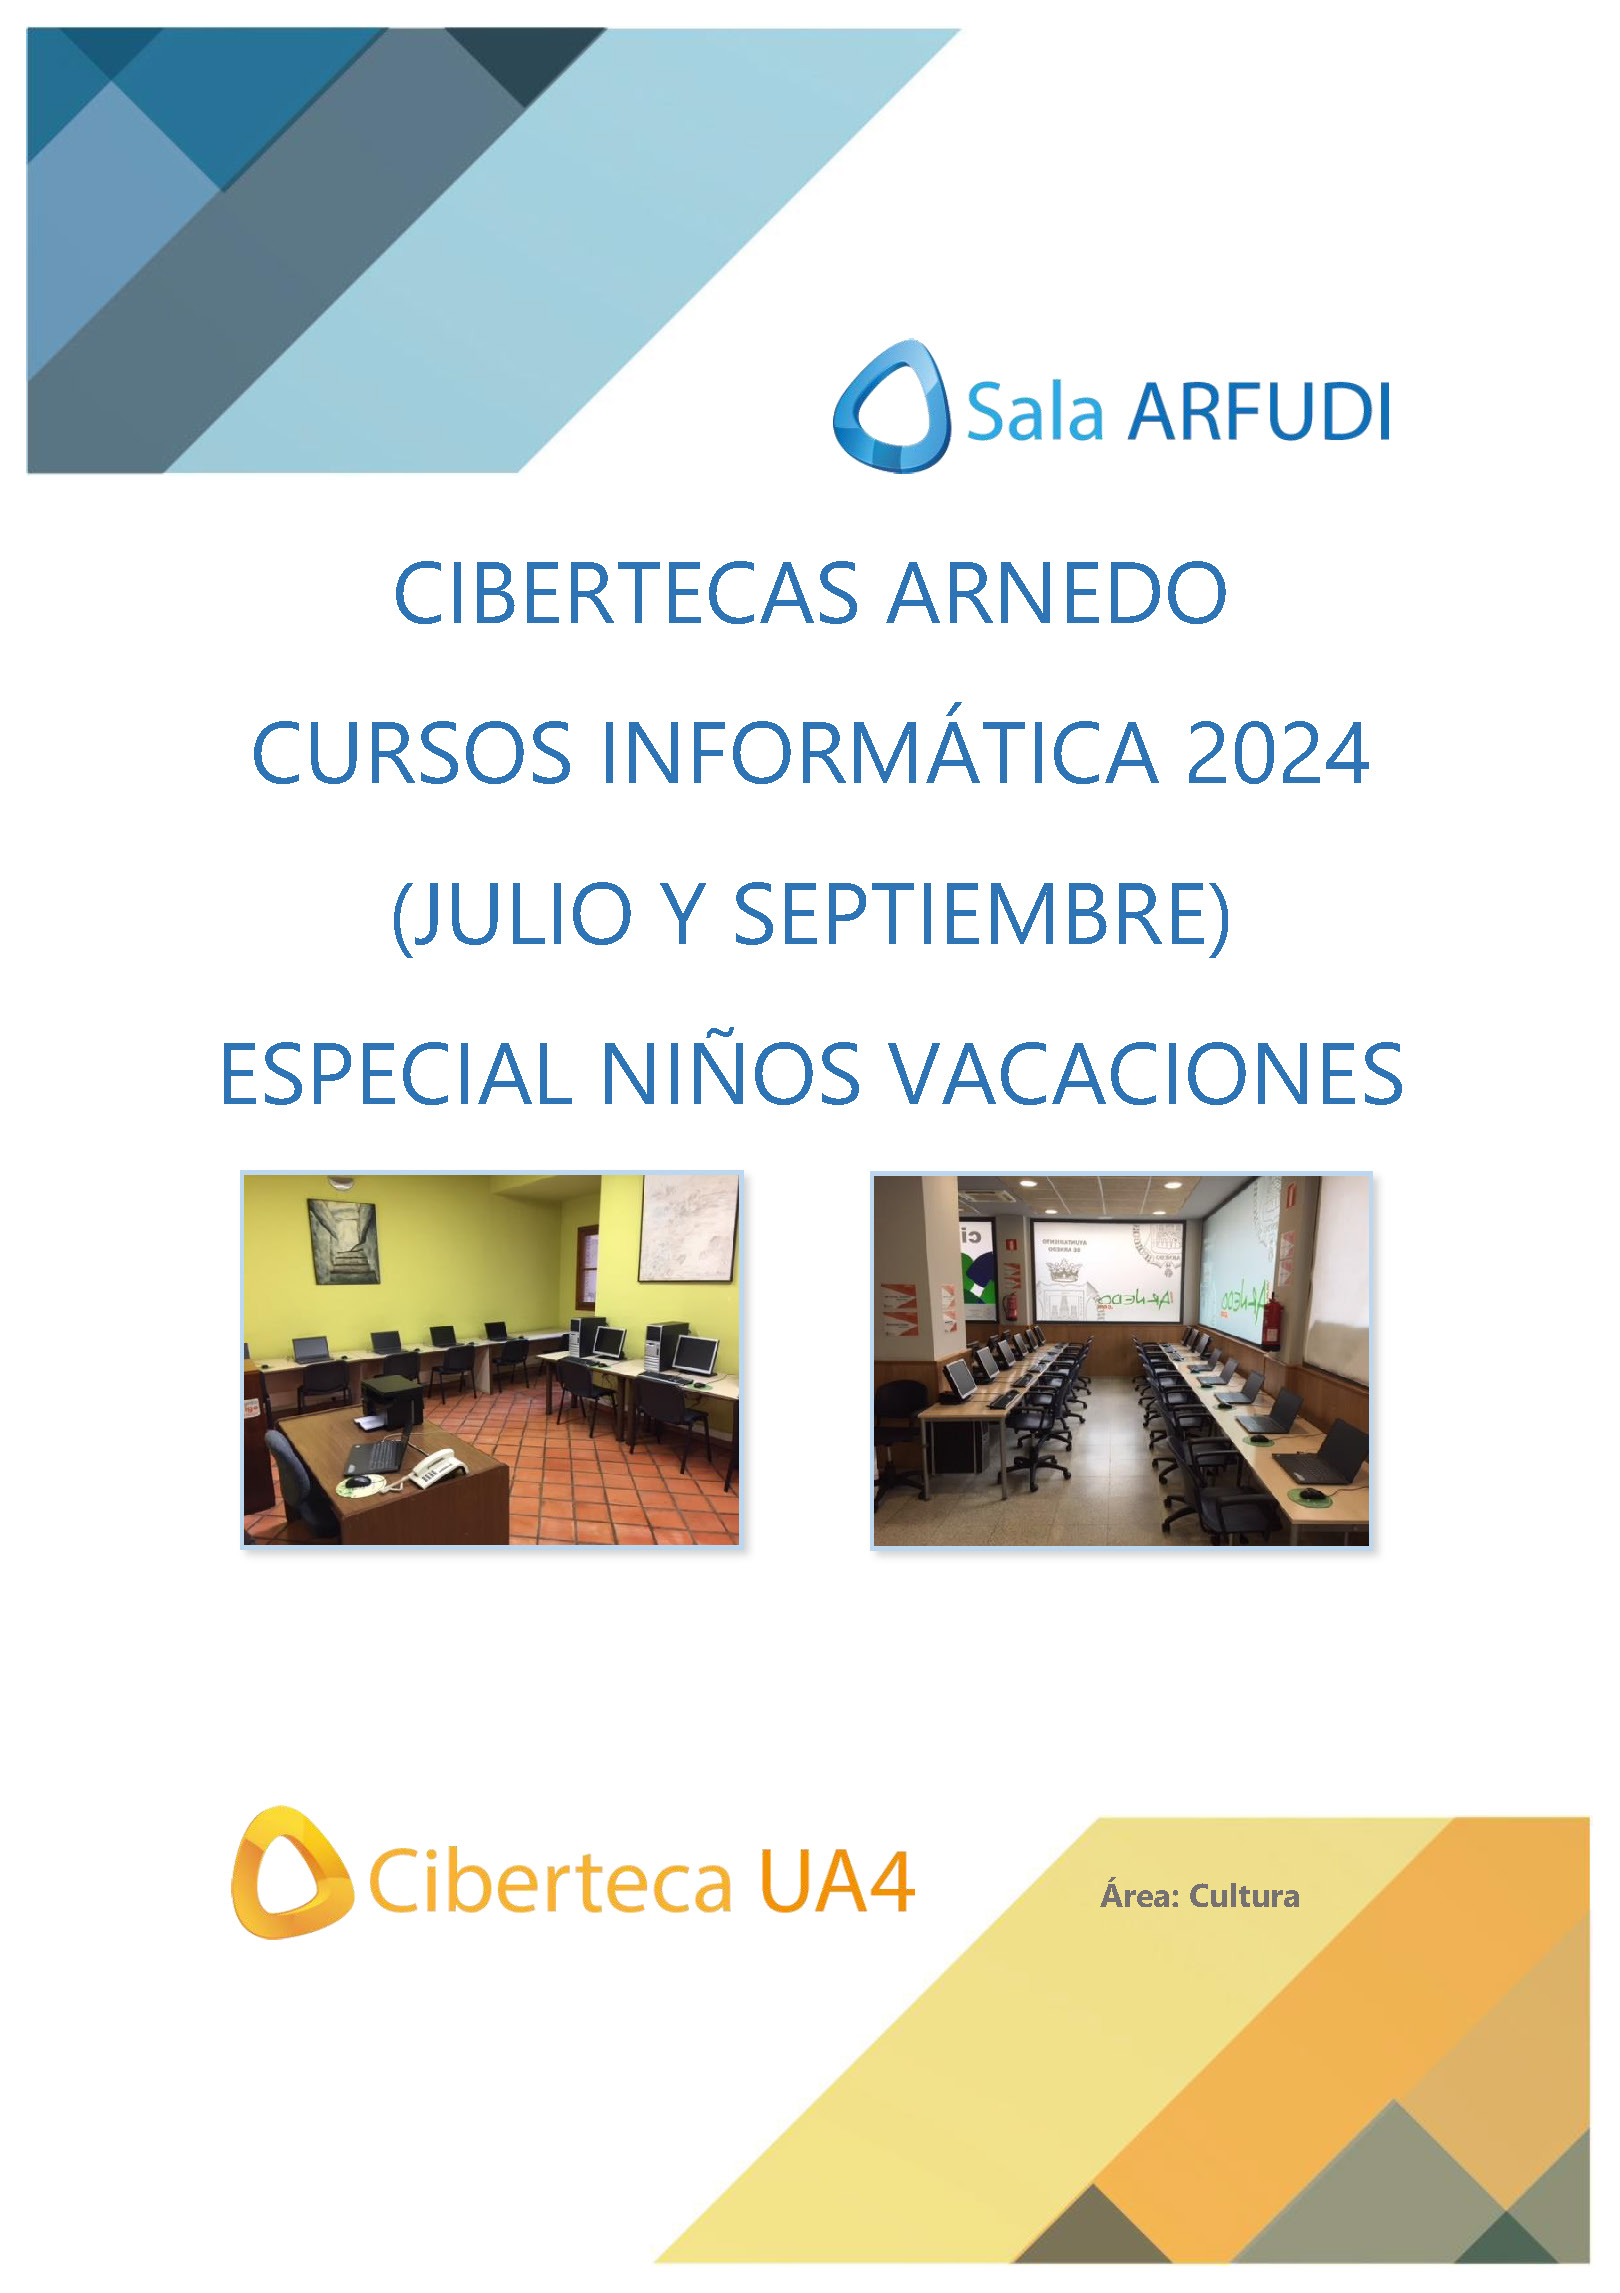 Cursos de informática julio y septiembre 2024 Cibertecas Municipales. ESPECIAL VACACIONES DE VERANO NIÑOS.